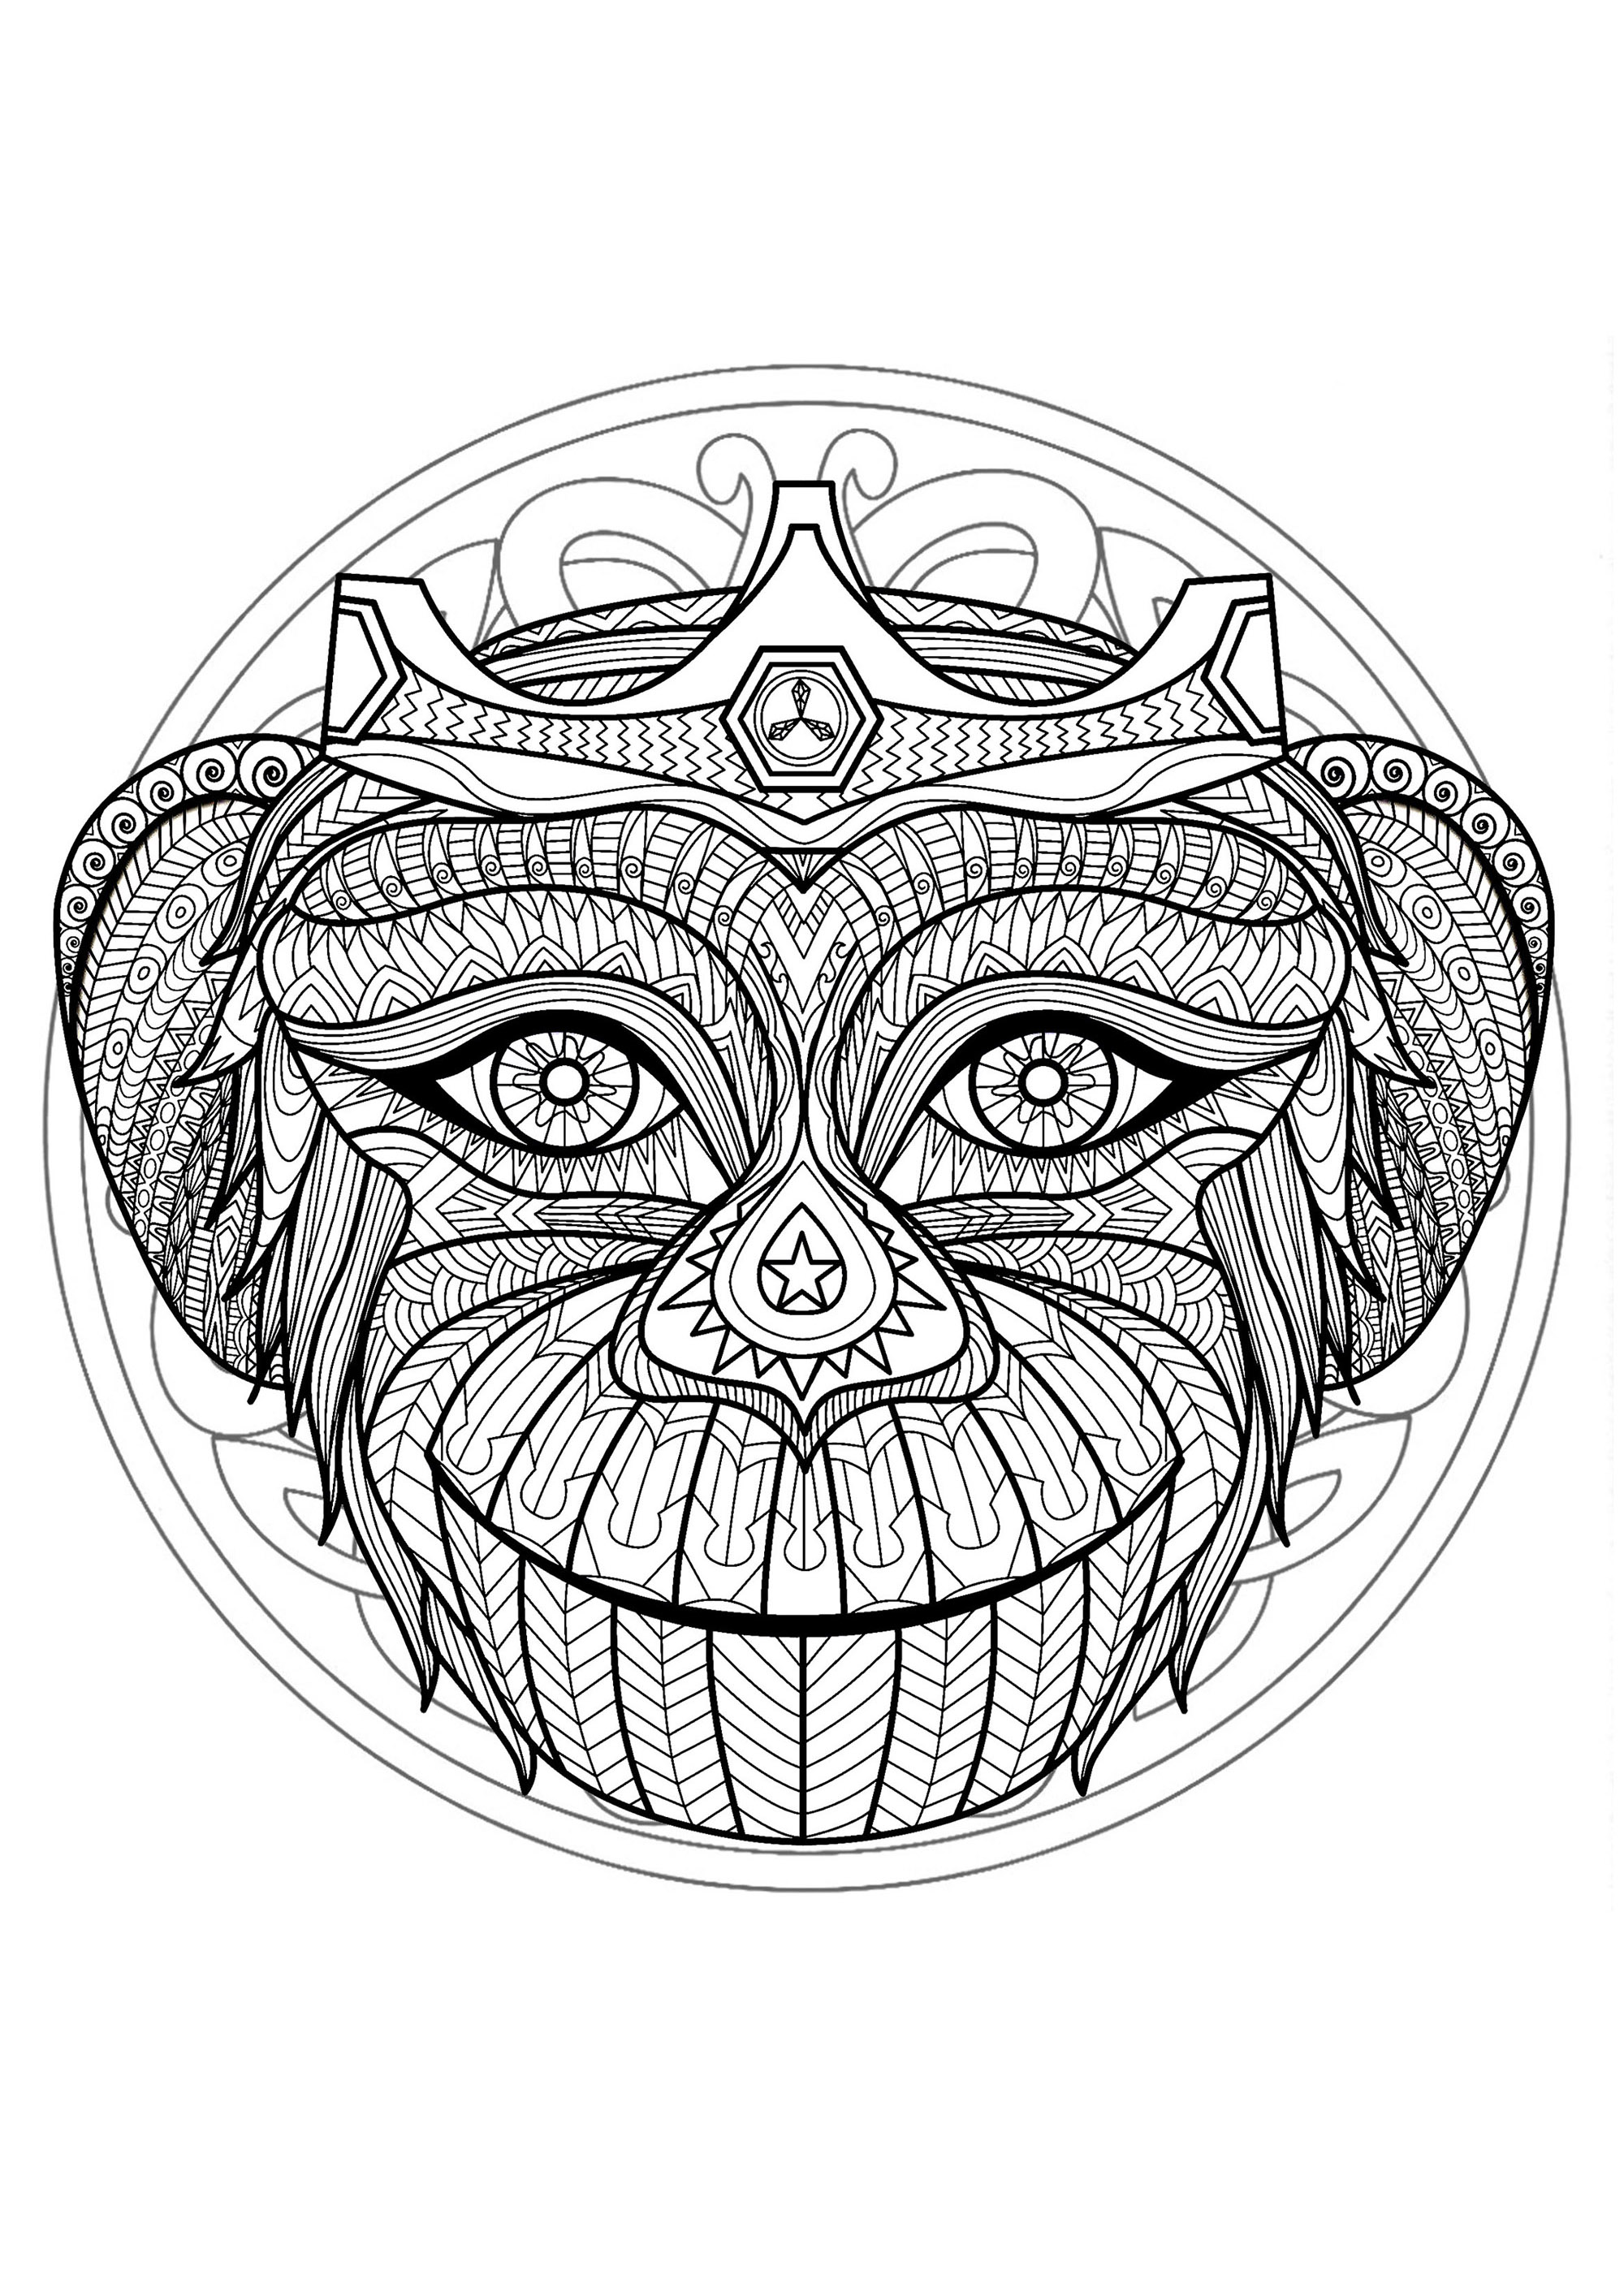 Mandala da colorare con una splendida testa di scimmia e bellissimi motivi intrecciati sullo sfondo